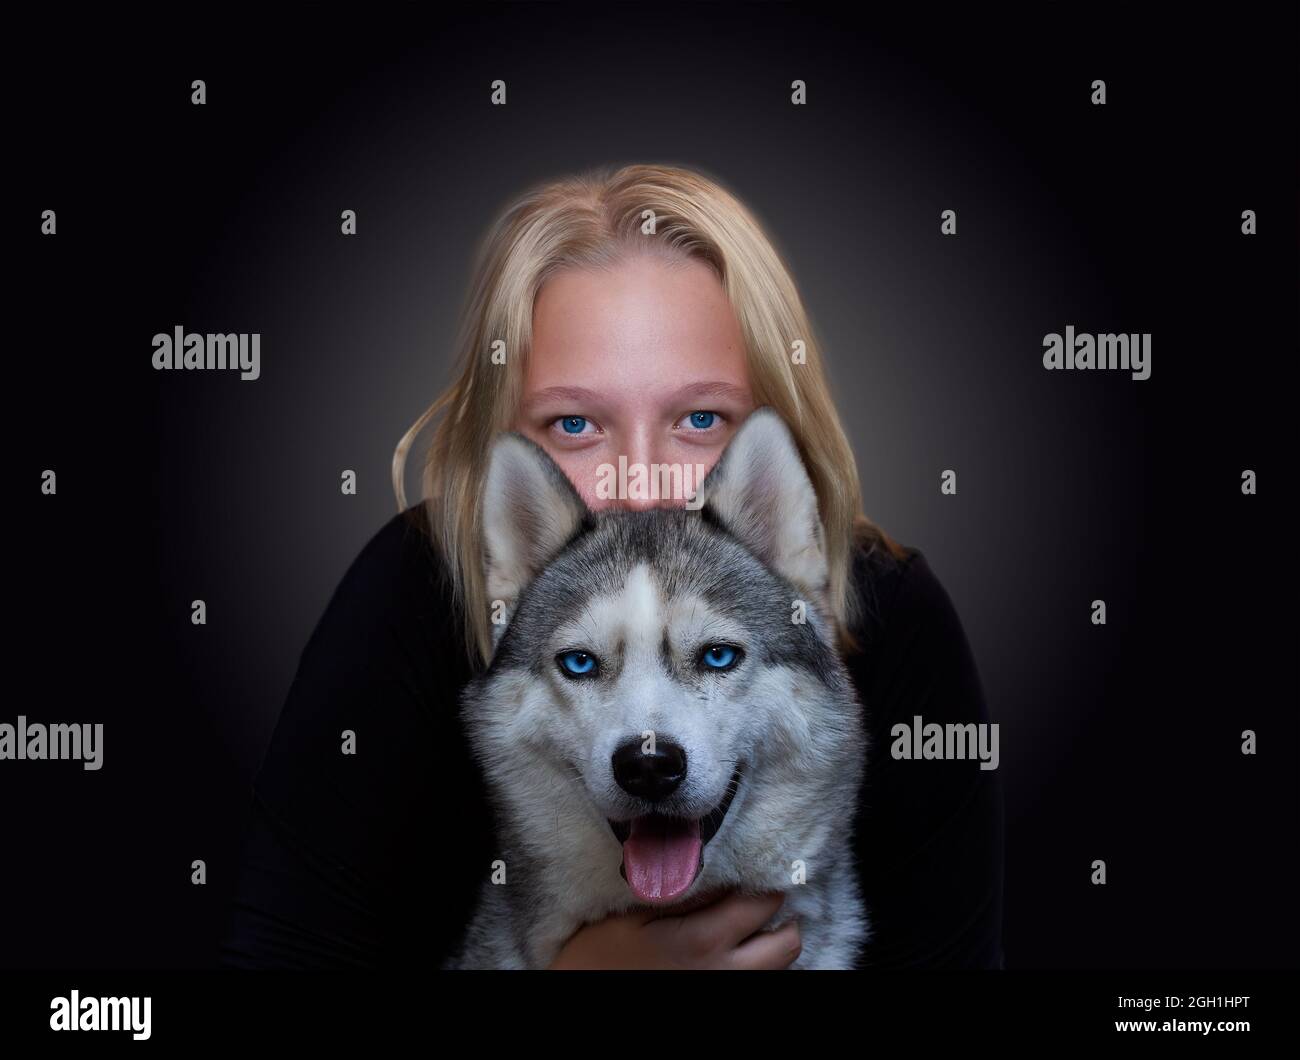 Ritratto di una ragazza e di un cane con occhi blu su sfondo scuro Foto Stock